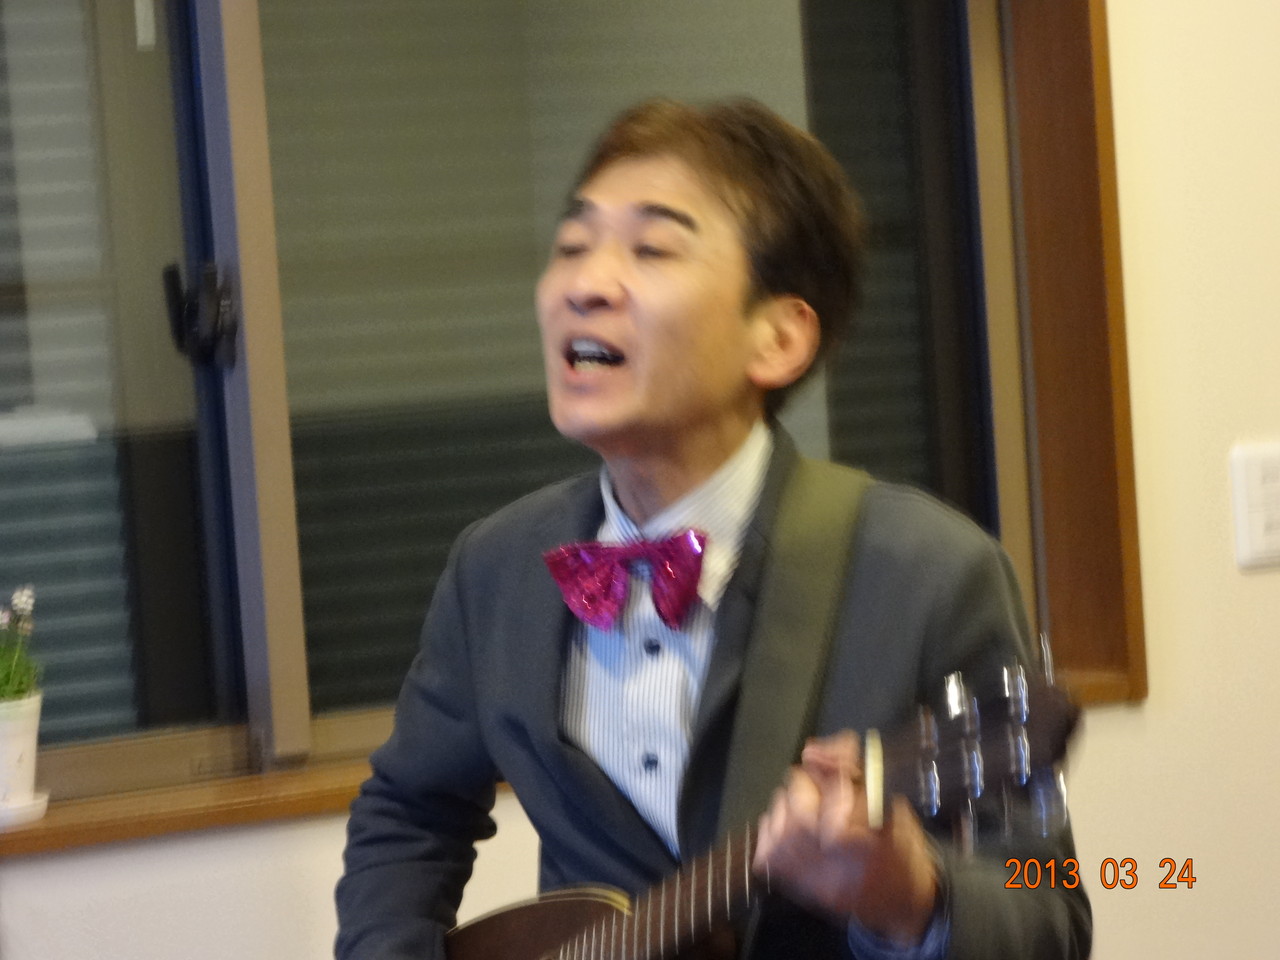 ぱんださん自慢のギター演奏で東北大震災応援歌”花は咲く”を合唱